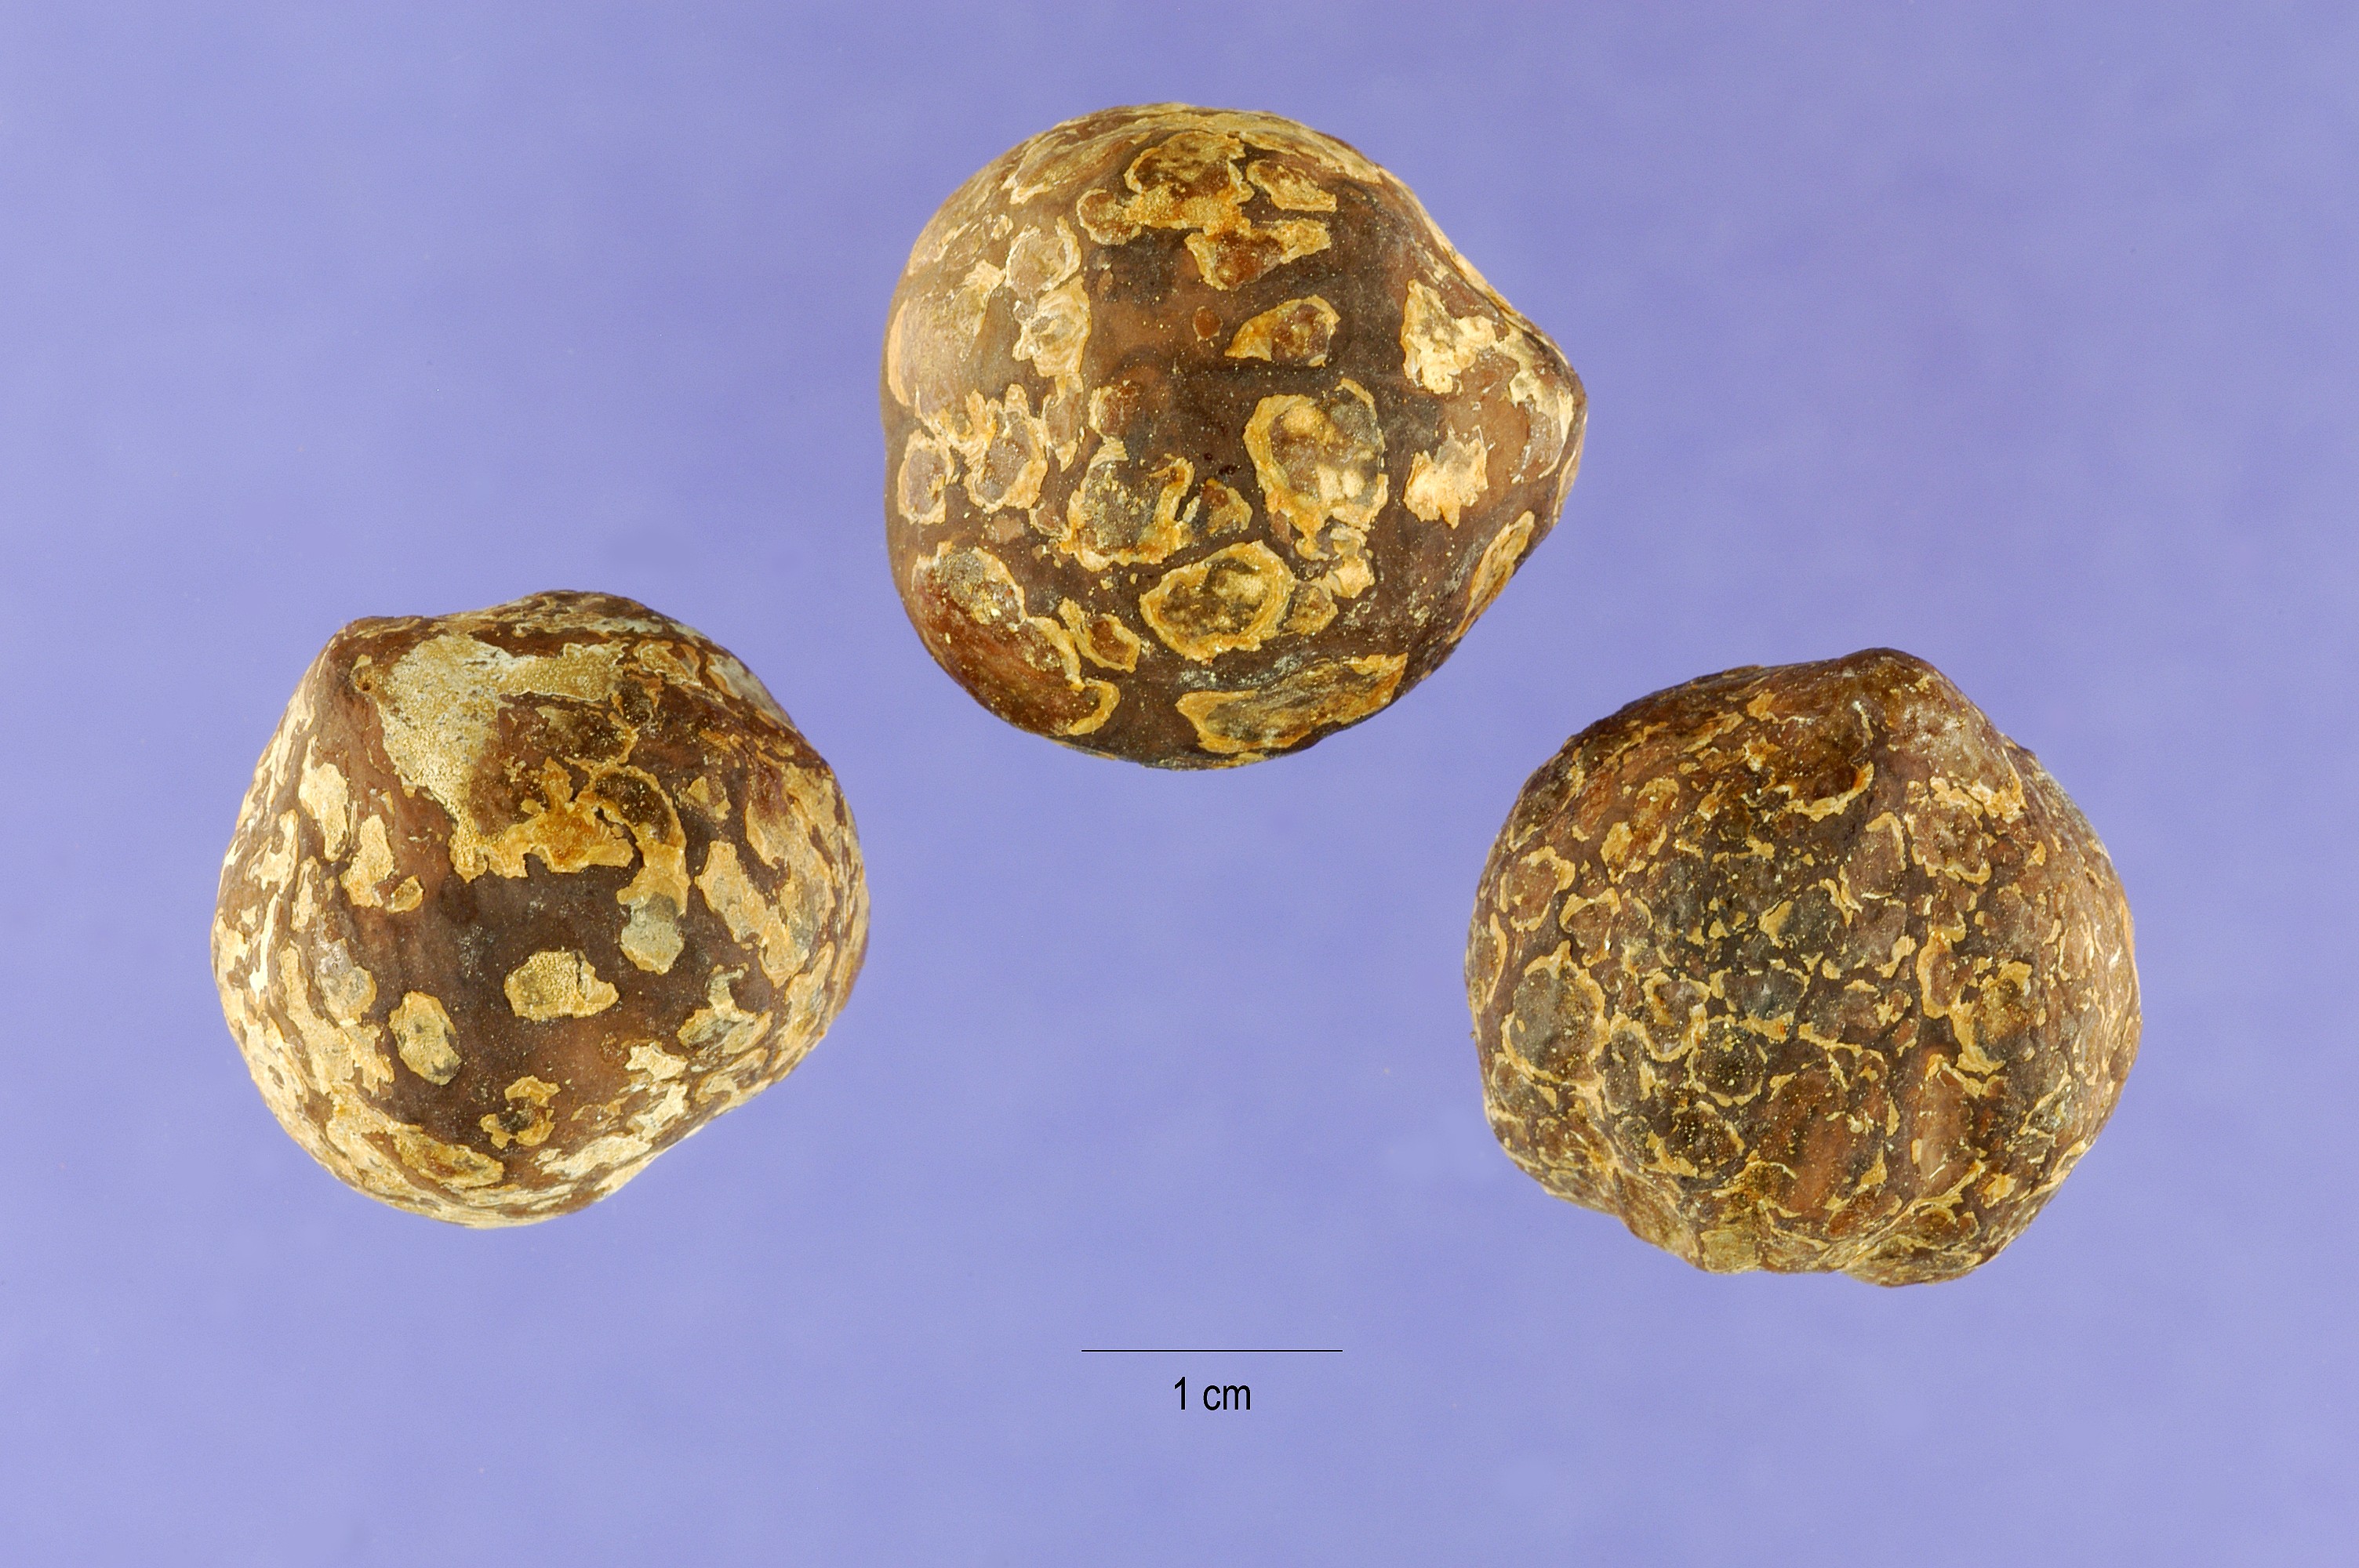 Aleurites moluccana seeds